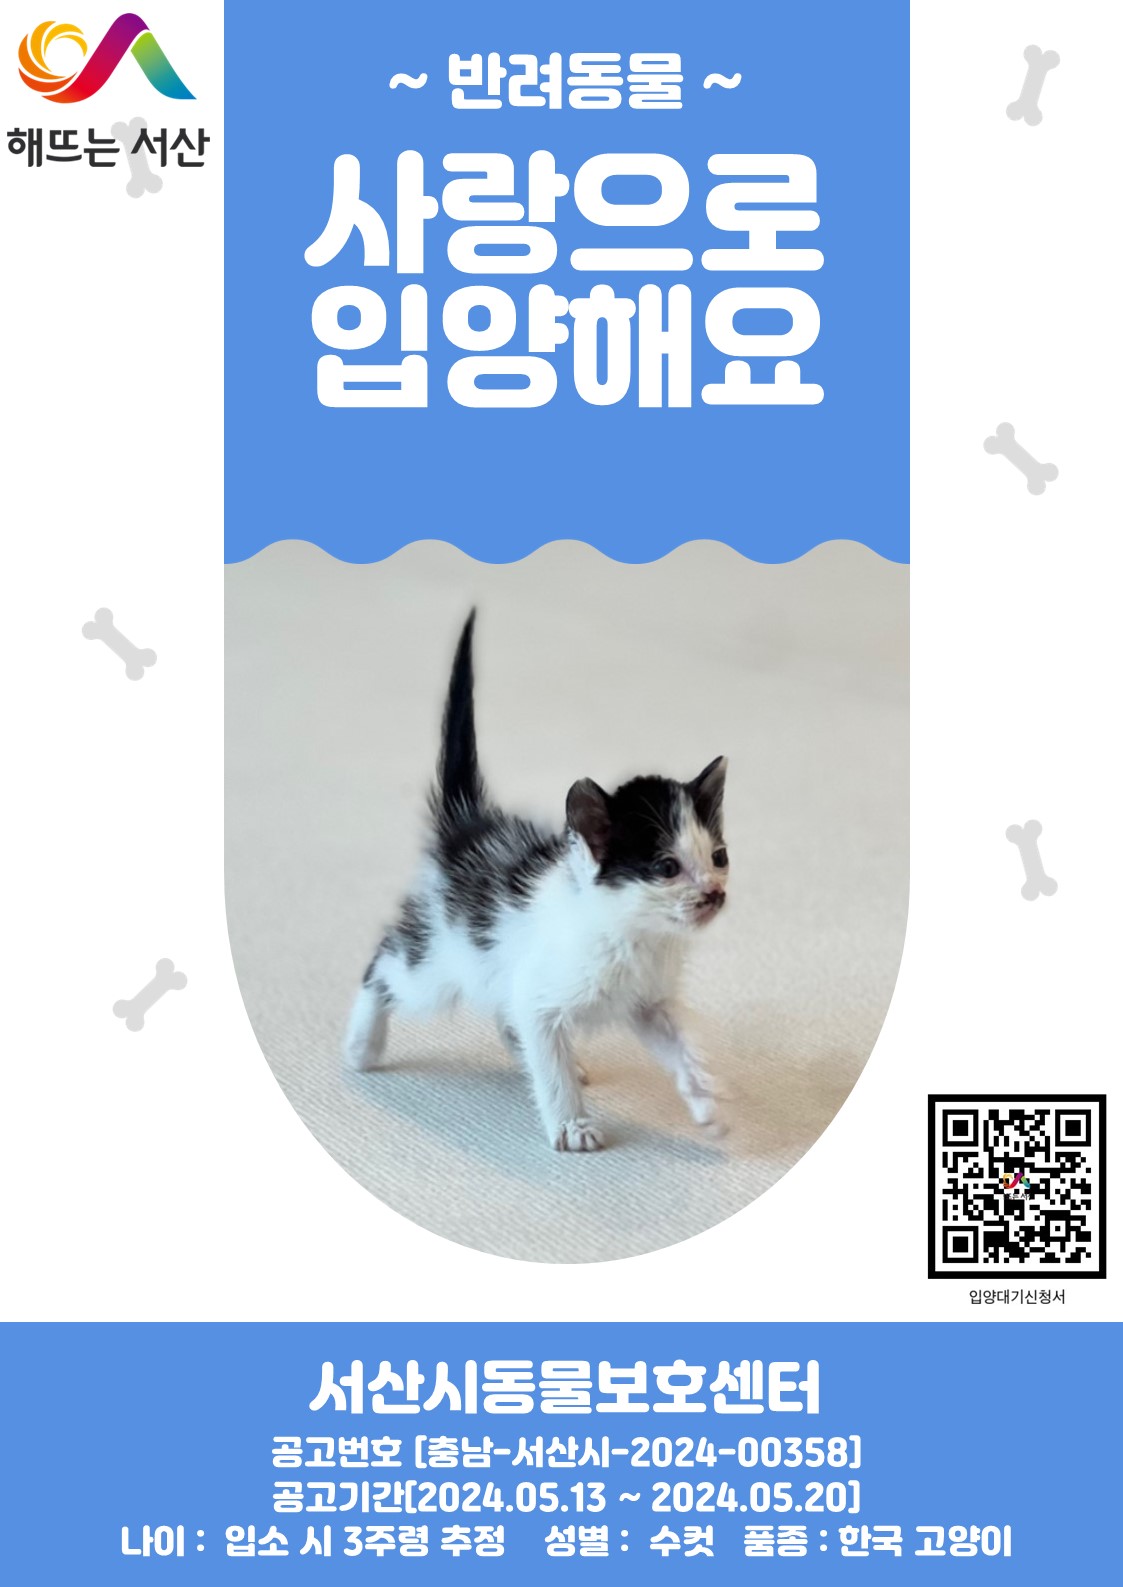 공고 번호가 충남-서산-2024-00358인 한국 고양이 동물 사진